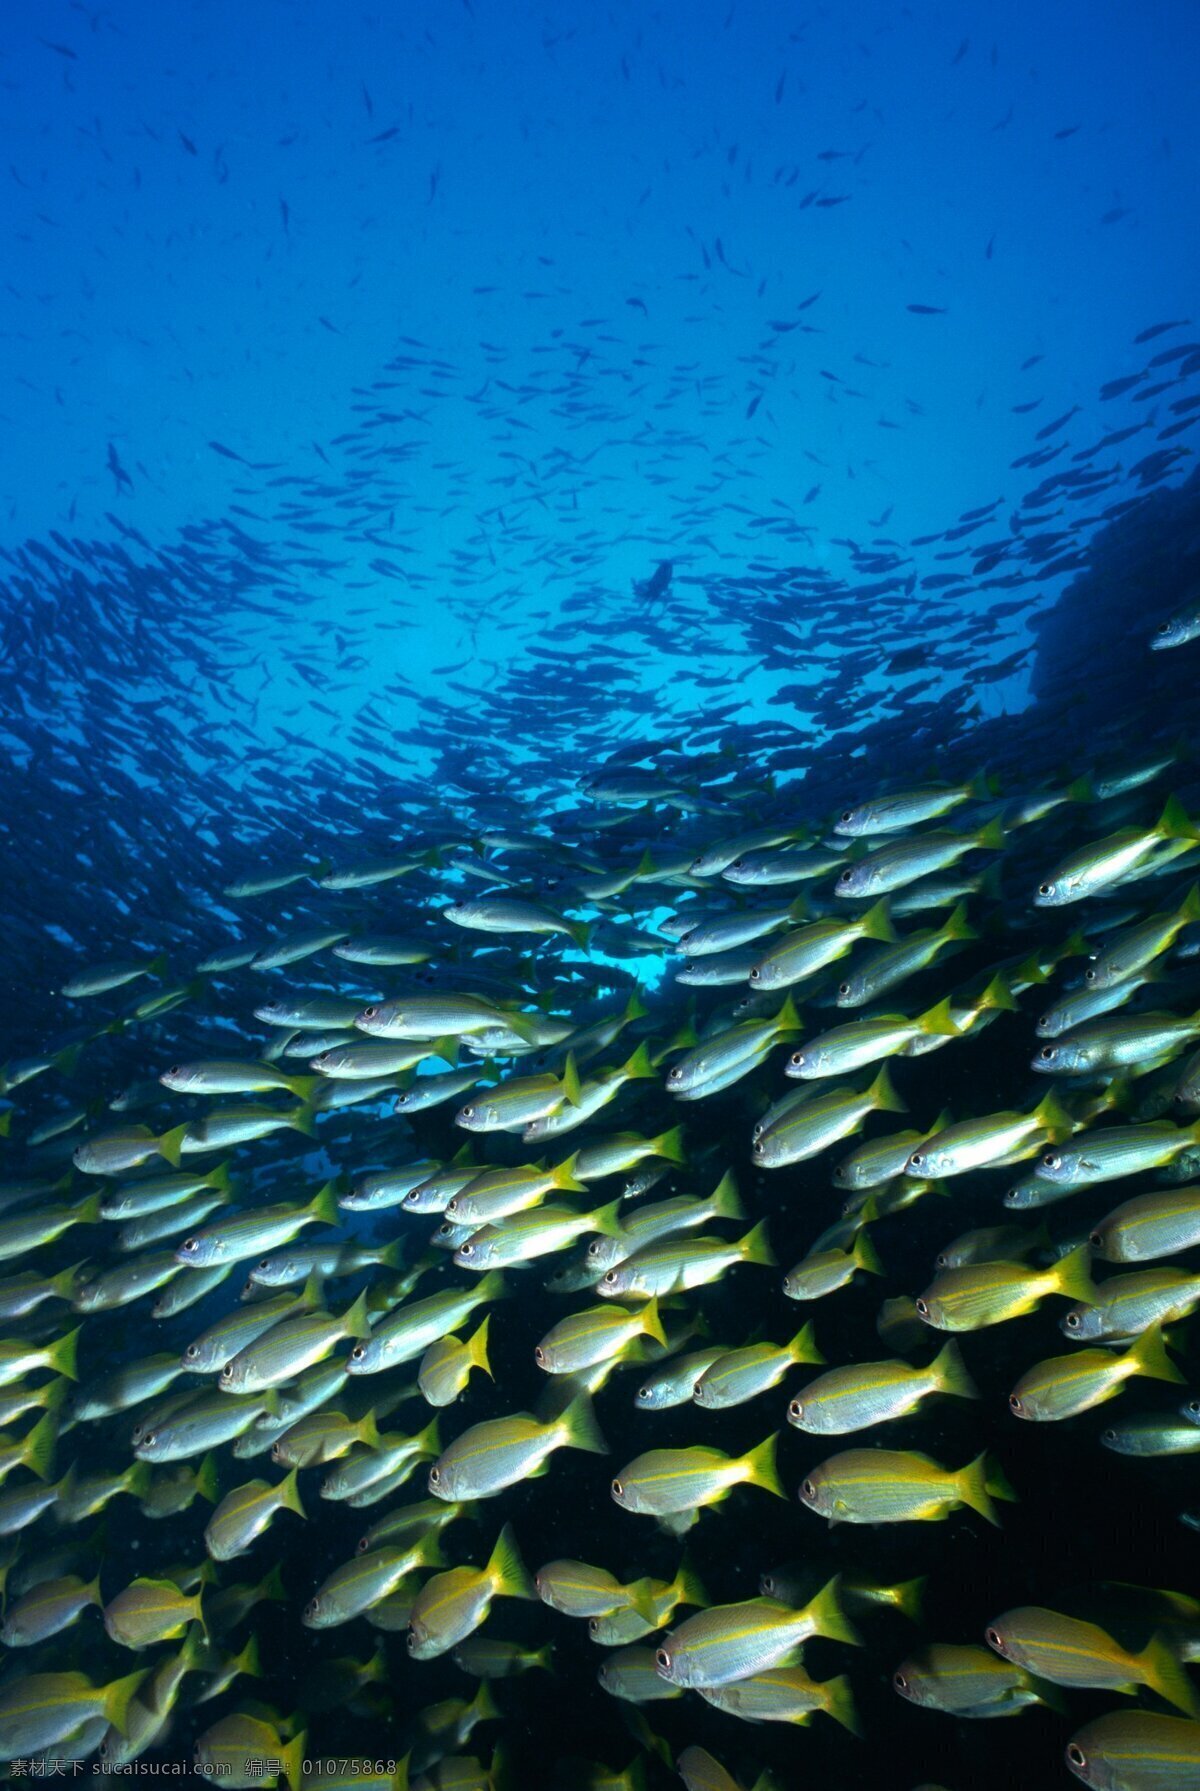 鱼群 海底 海底探秘 深海鱼群 海底世界 鱼 海洋生物 生物世界